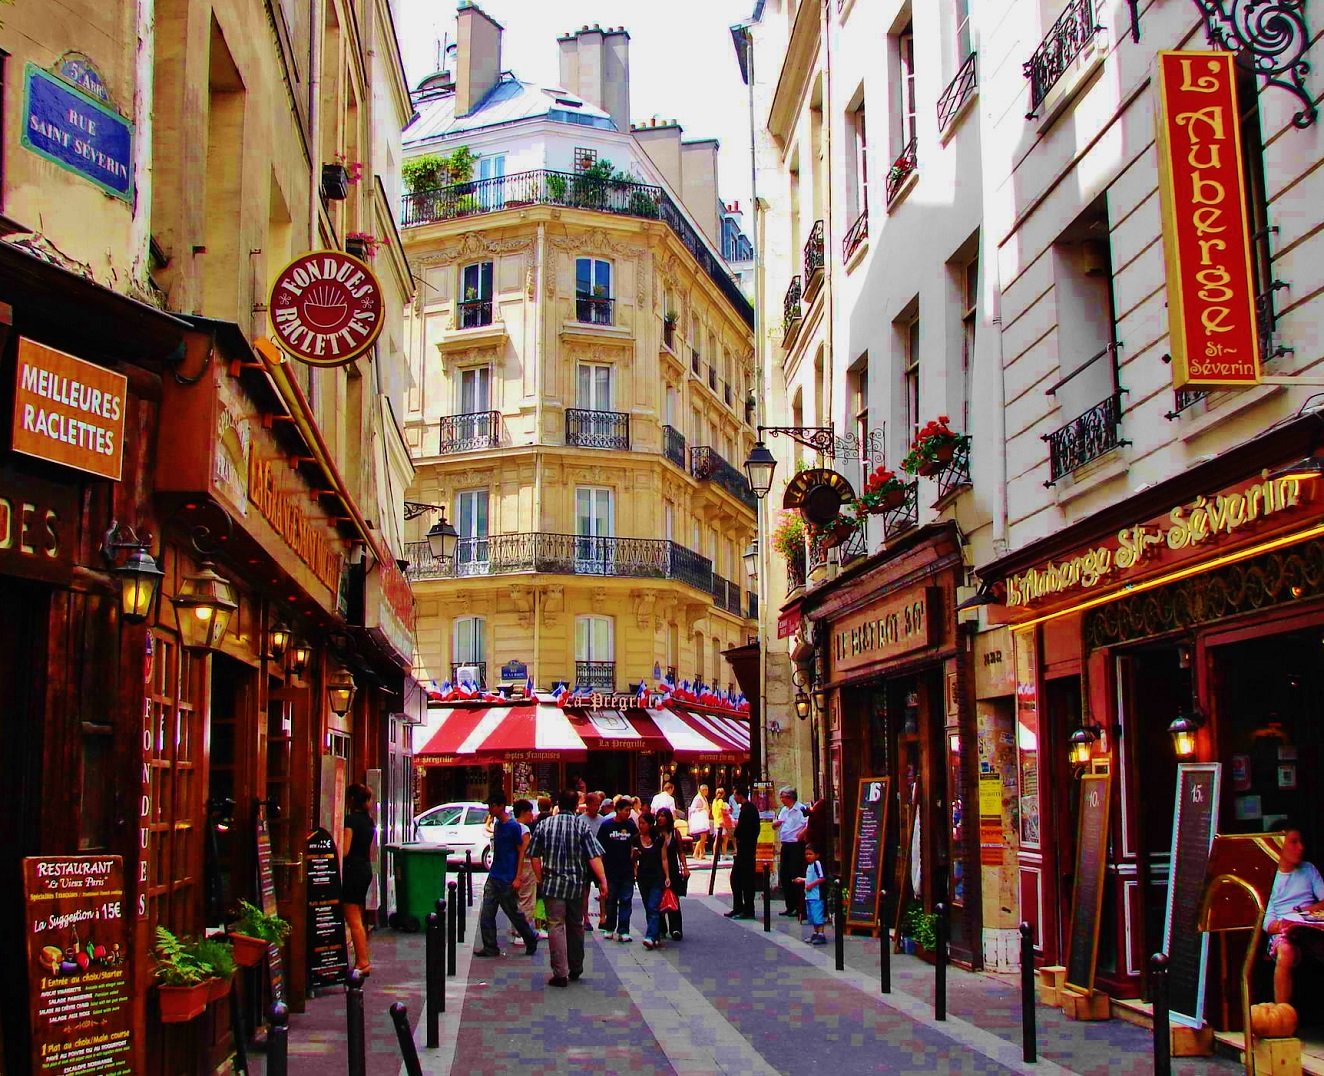 50/Quartier/Hotel - 4 star - close - Latin Quarter - Paris.jpg